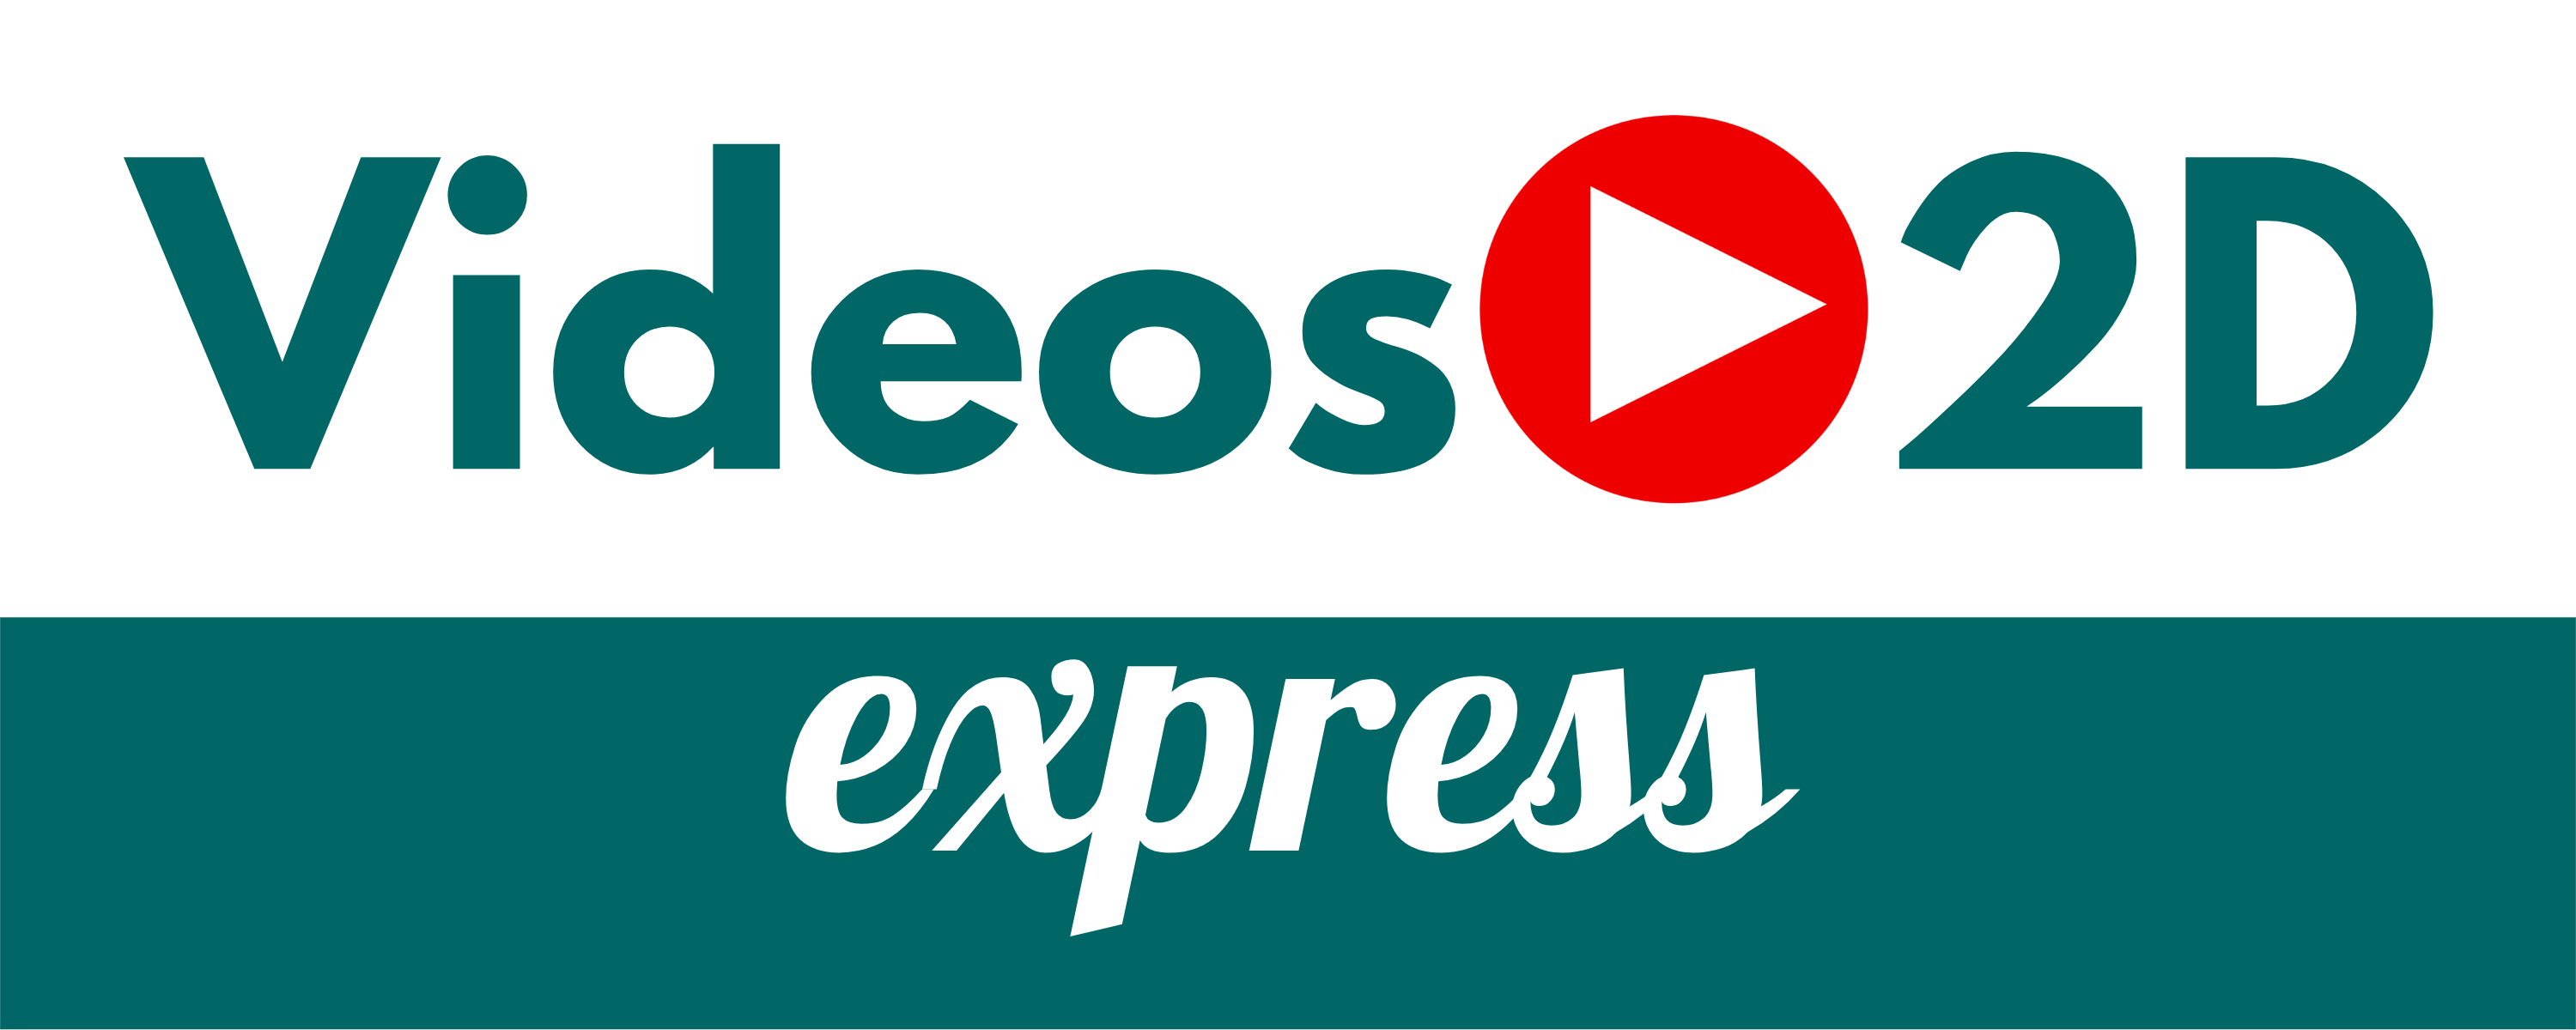 Videos 2D Express